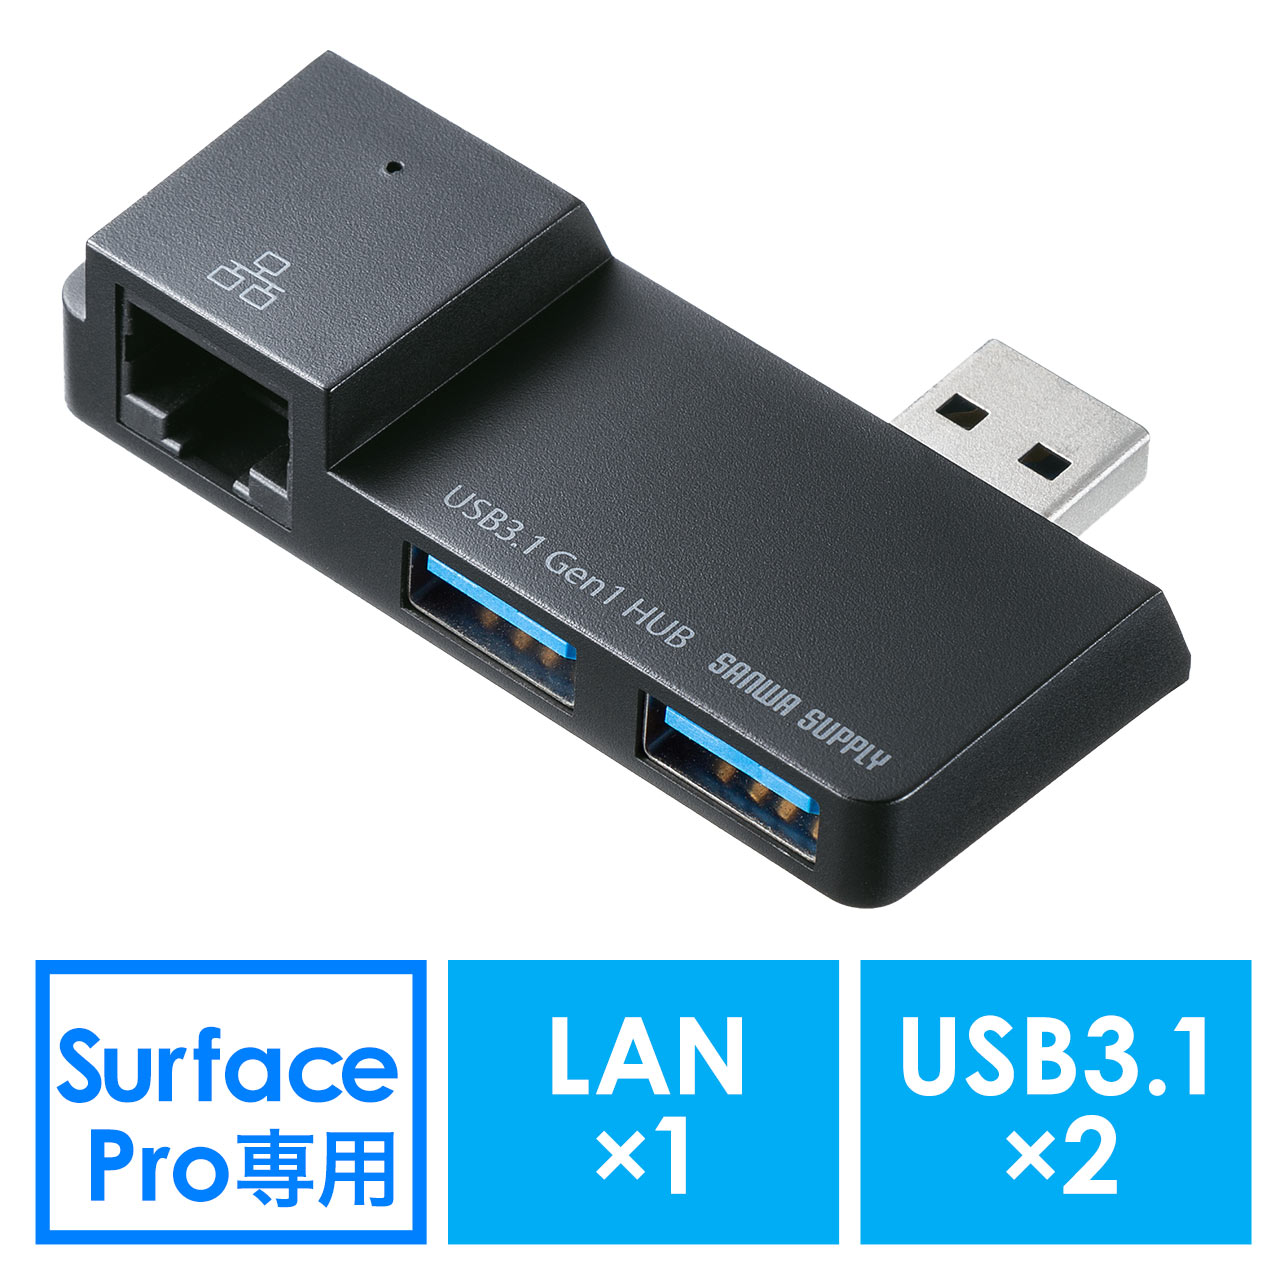 SurfacepUSBnu(Surface Pro 7ESurface Pro 6ELAN|[gEUSB3.1 Gen1~2EubNj 400-HUB066BK